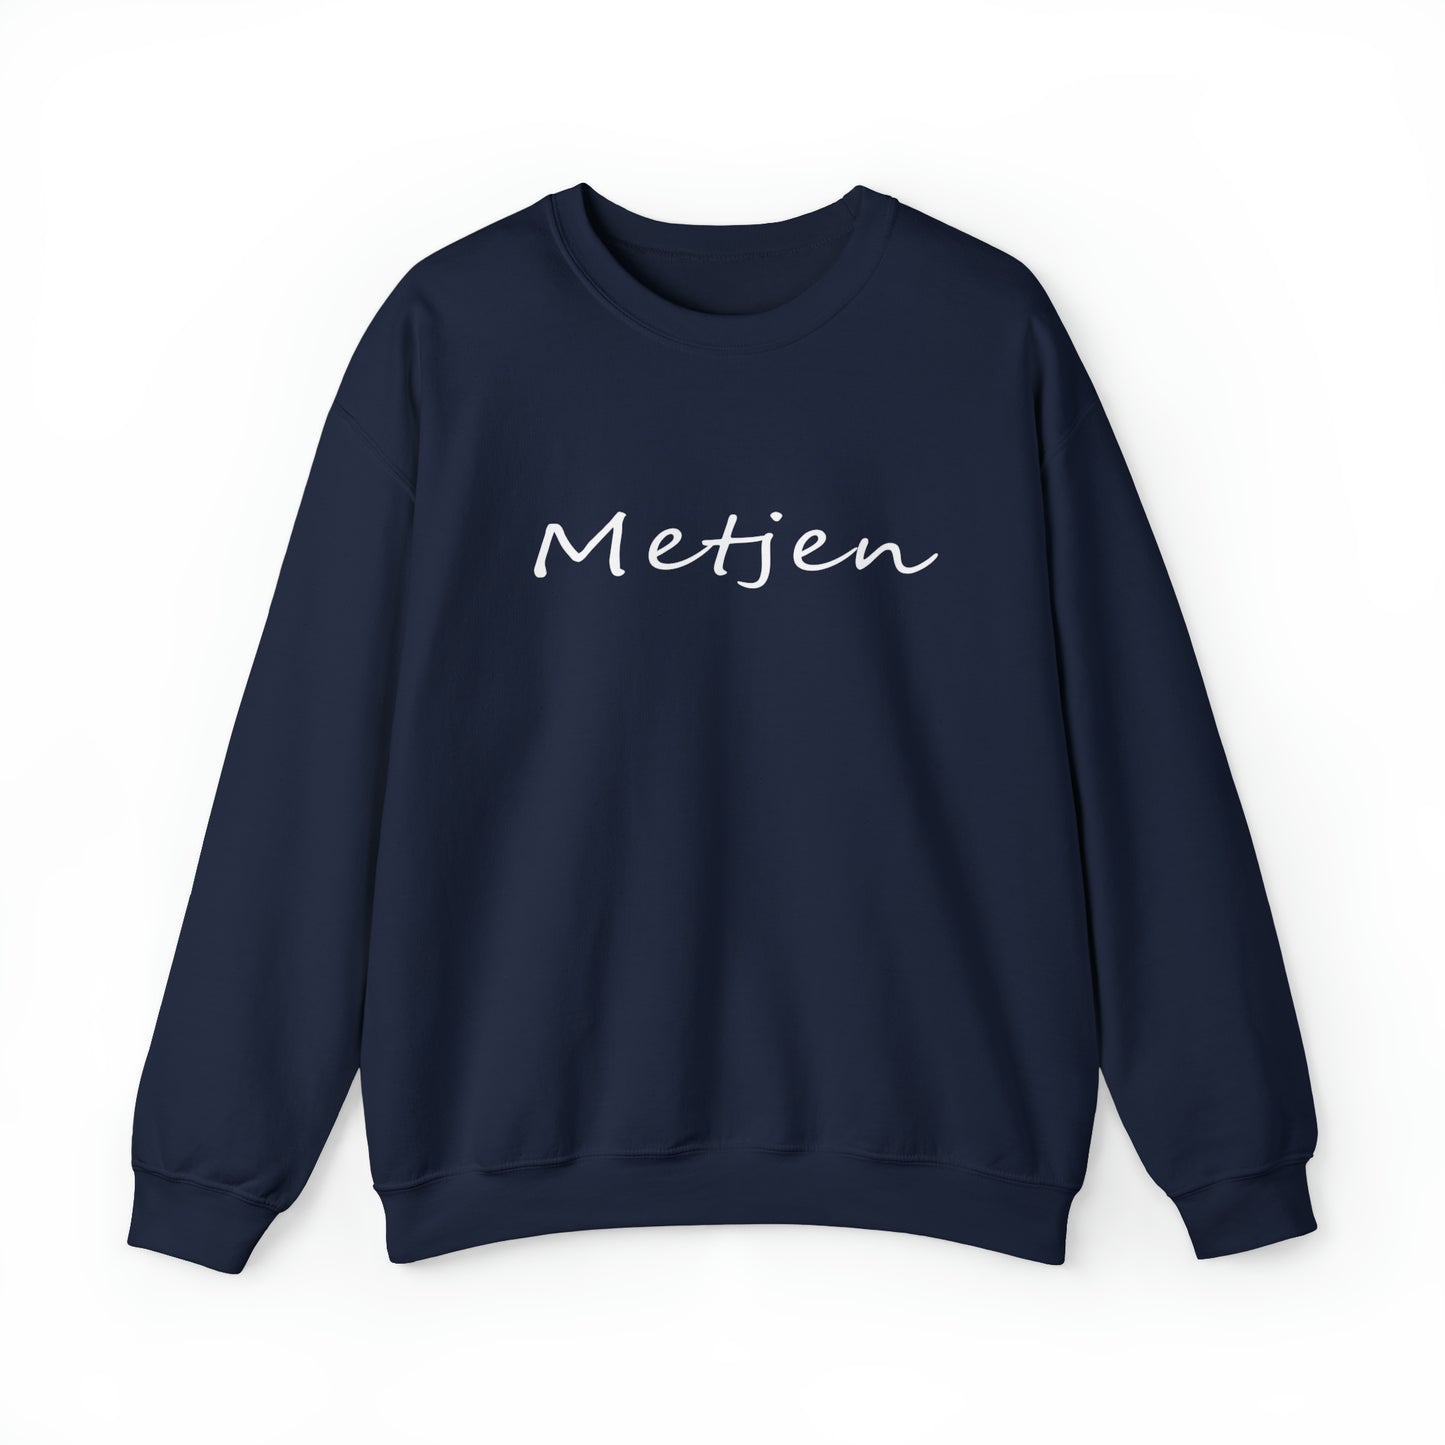 Int Oilsjters - Sweater - Metjen